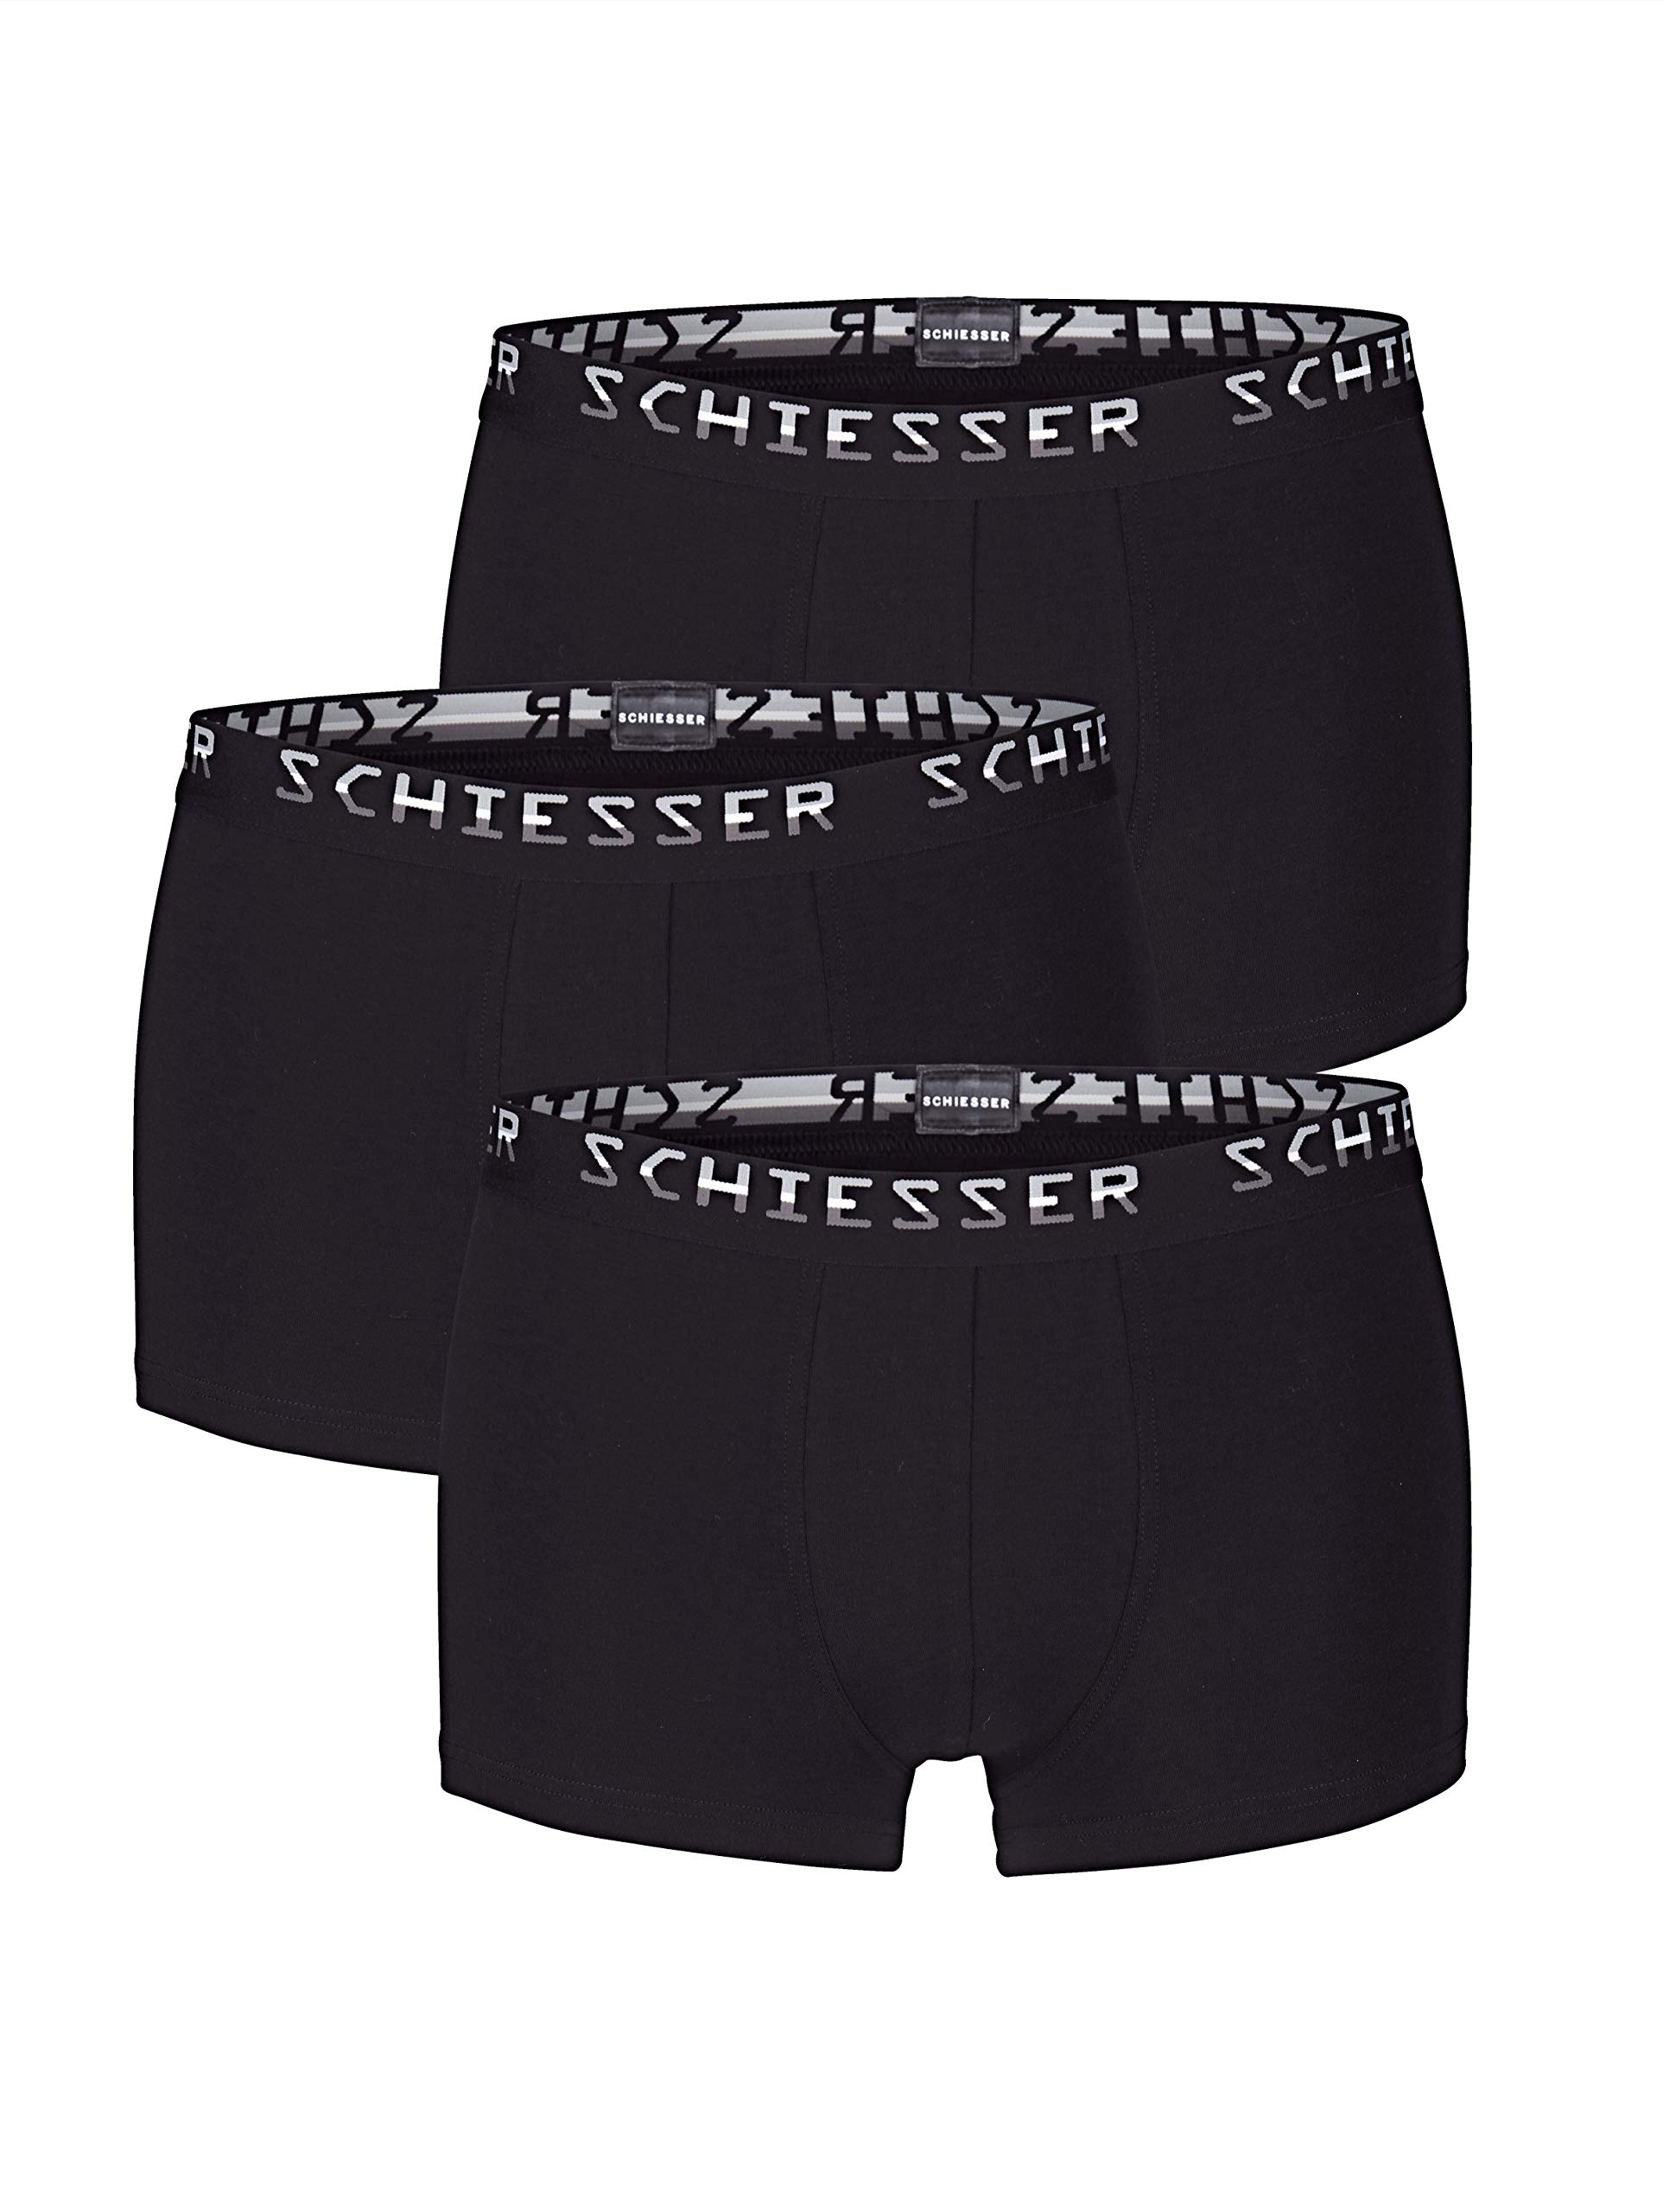 Schiesser Herren Boxershorts, Schwarz (Schwarz 000), 4 (3er Pack)